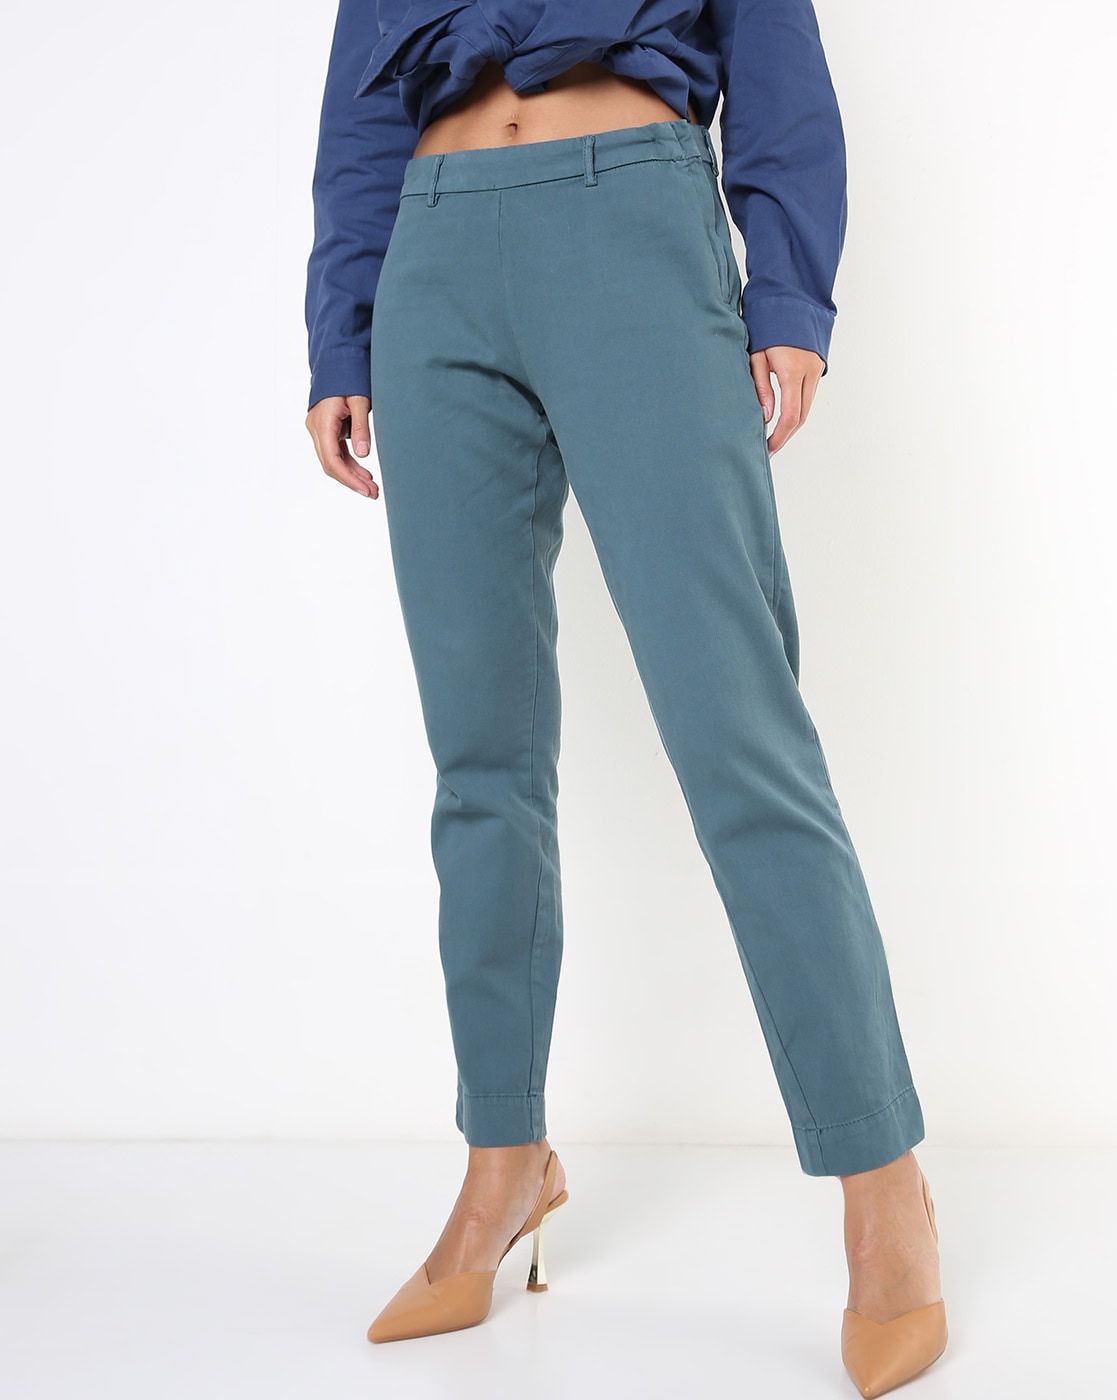 Buy Indigo Trousers  Pants for Women by Encrustd Online  Ajiocom